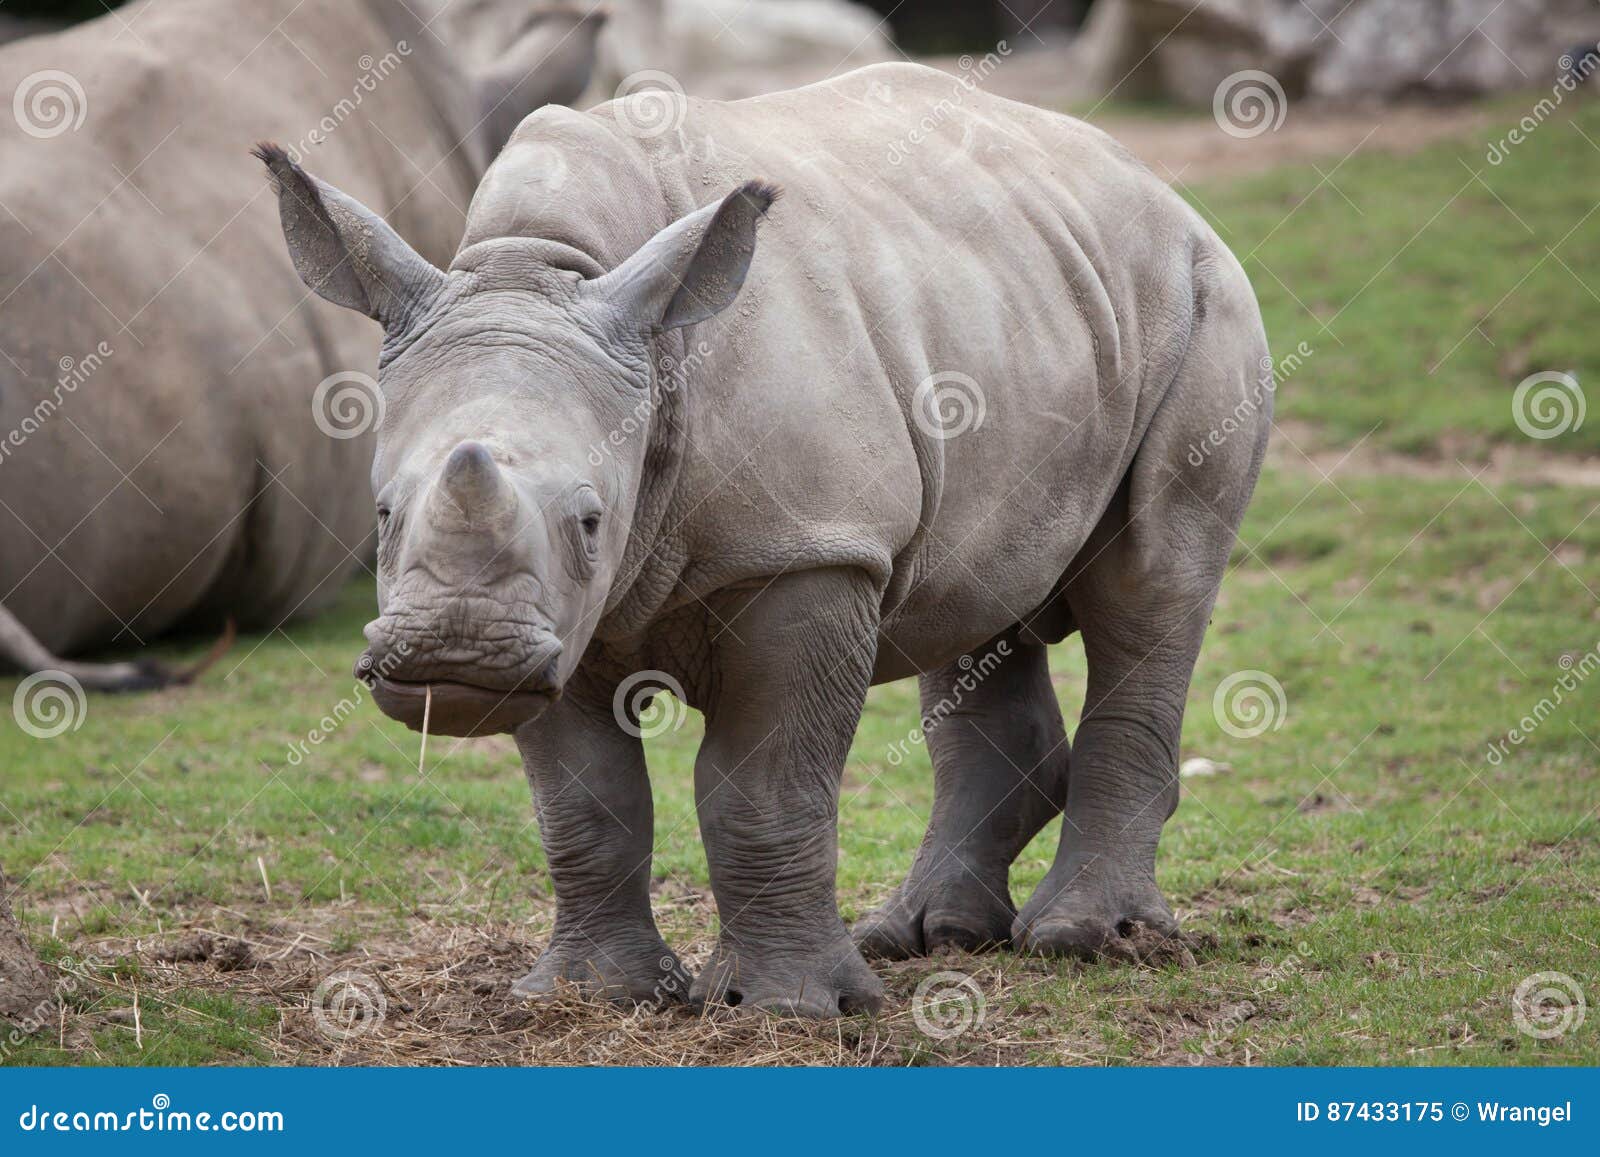 southern white rhinoceros ceratotherium simum.